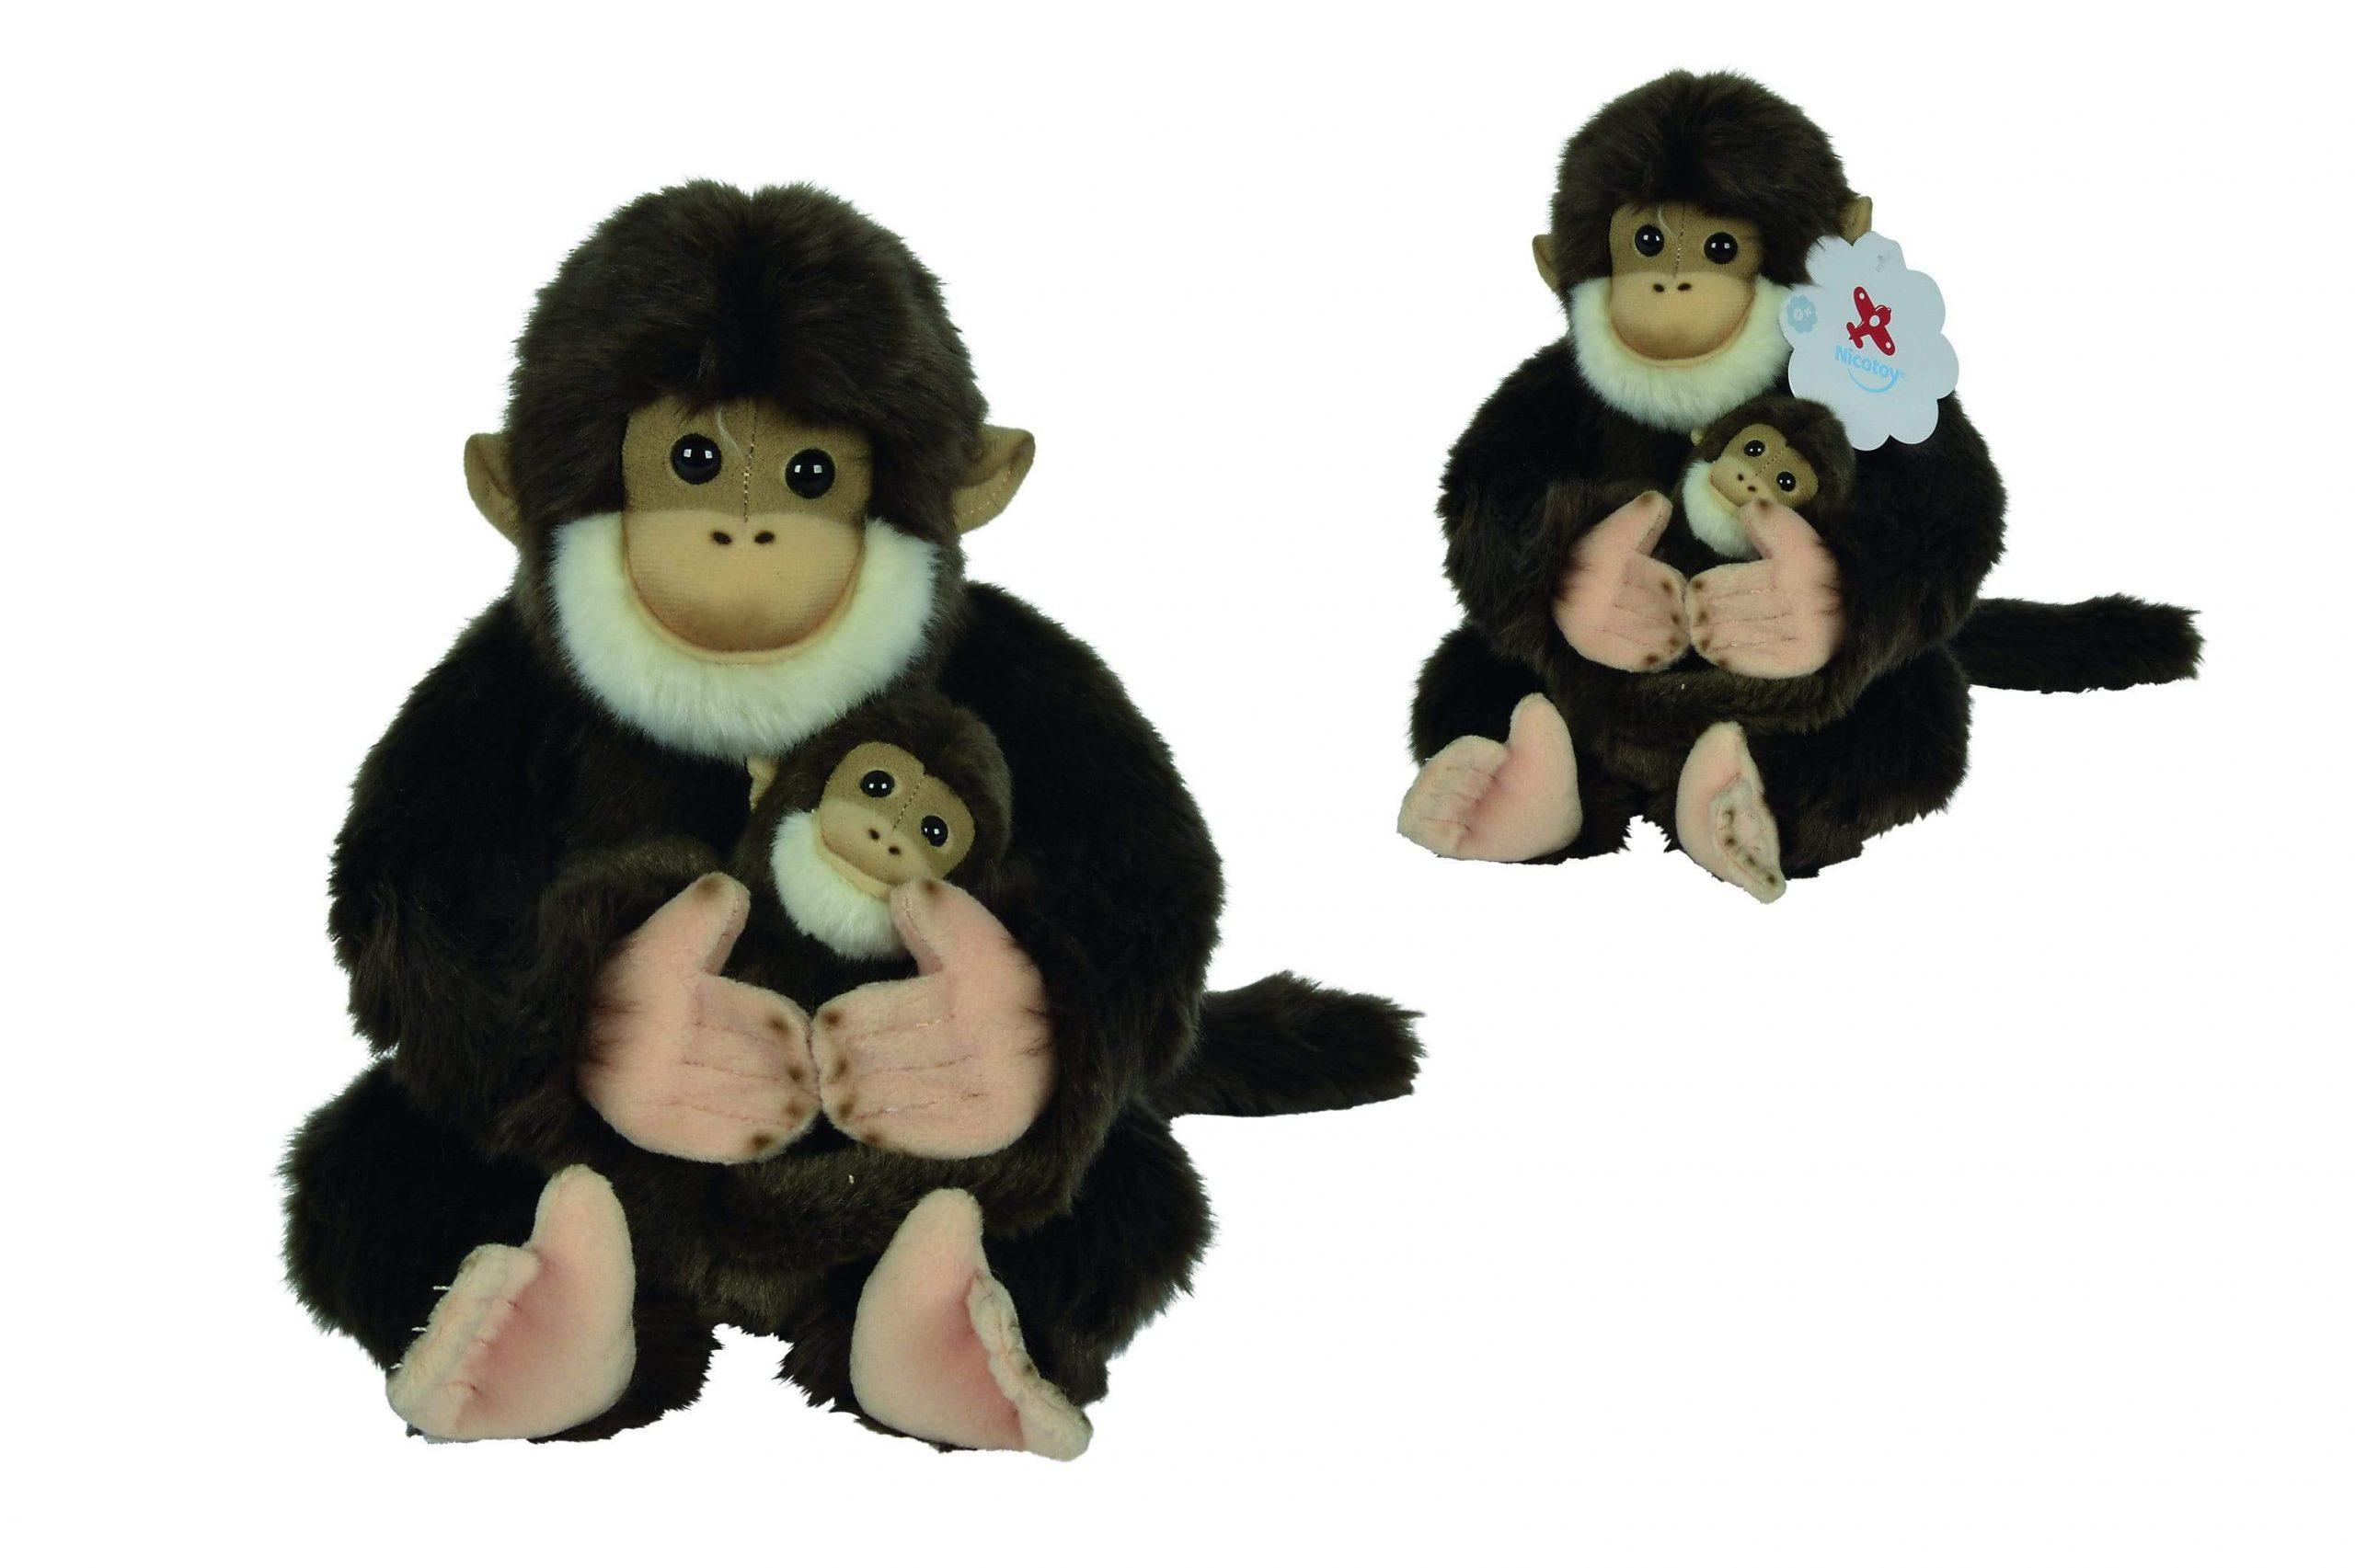 دمية القرد وطفله 25 سم NICOTOY - Monkey With Baby